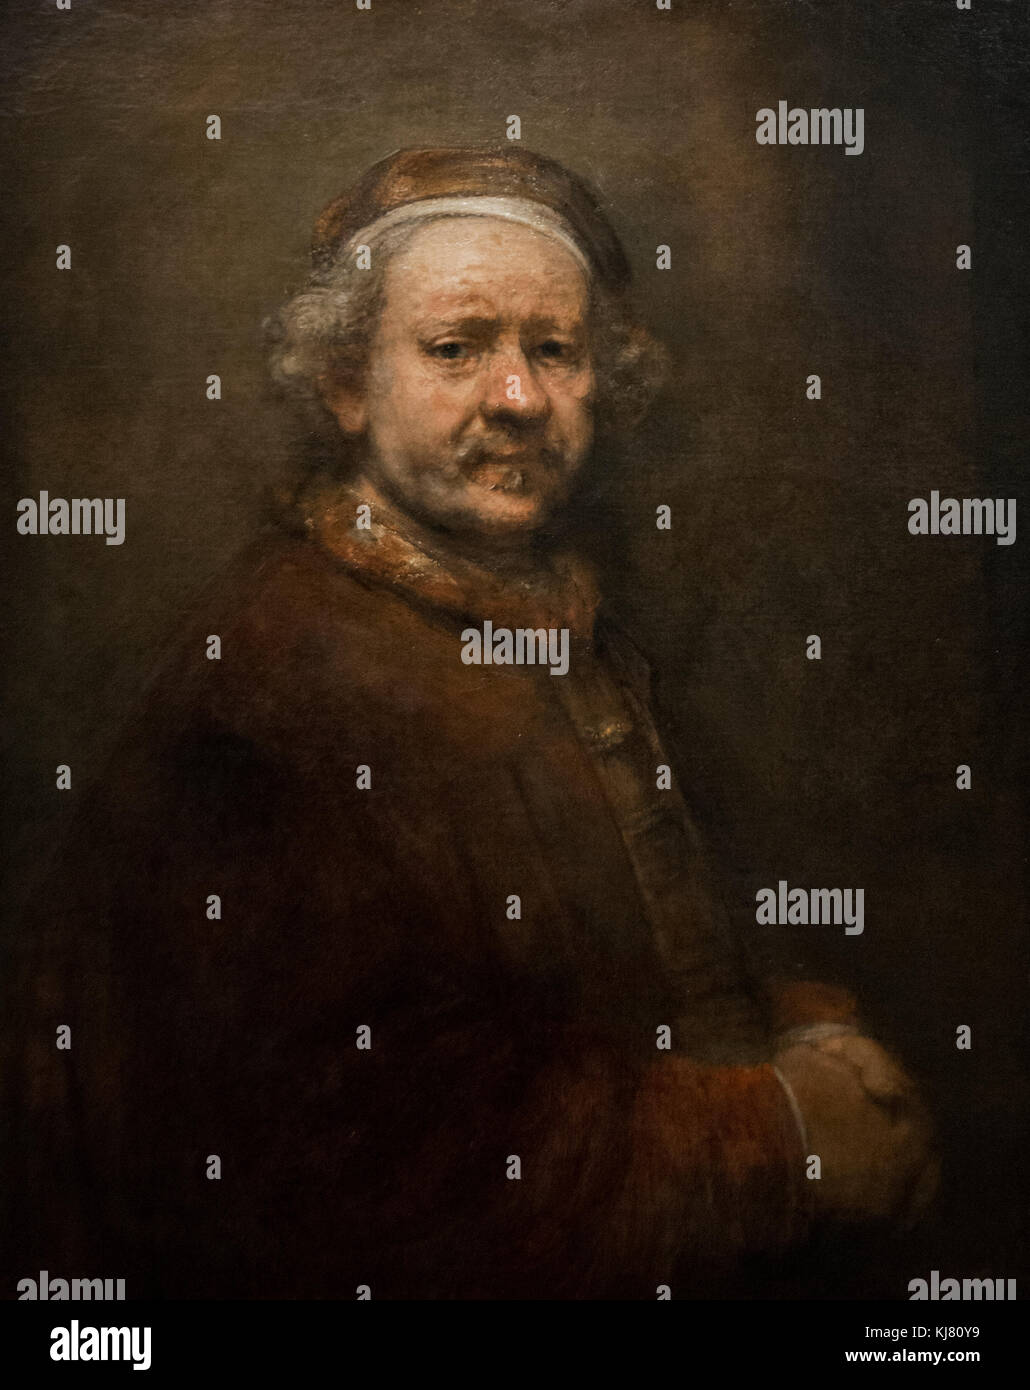 Rembrandt: Self Portrait ab dem Alter von 63 Jahren (1669) Stockfoto